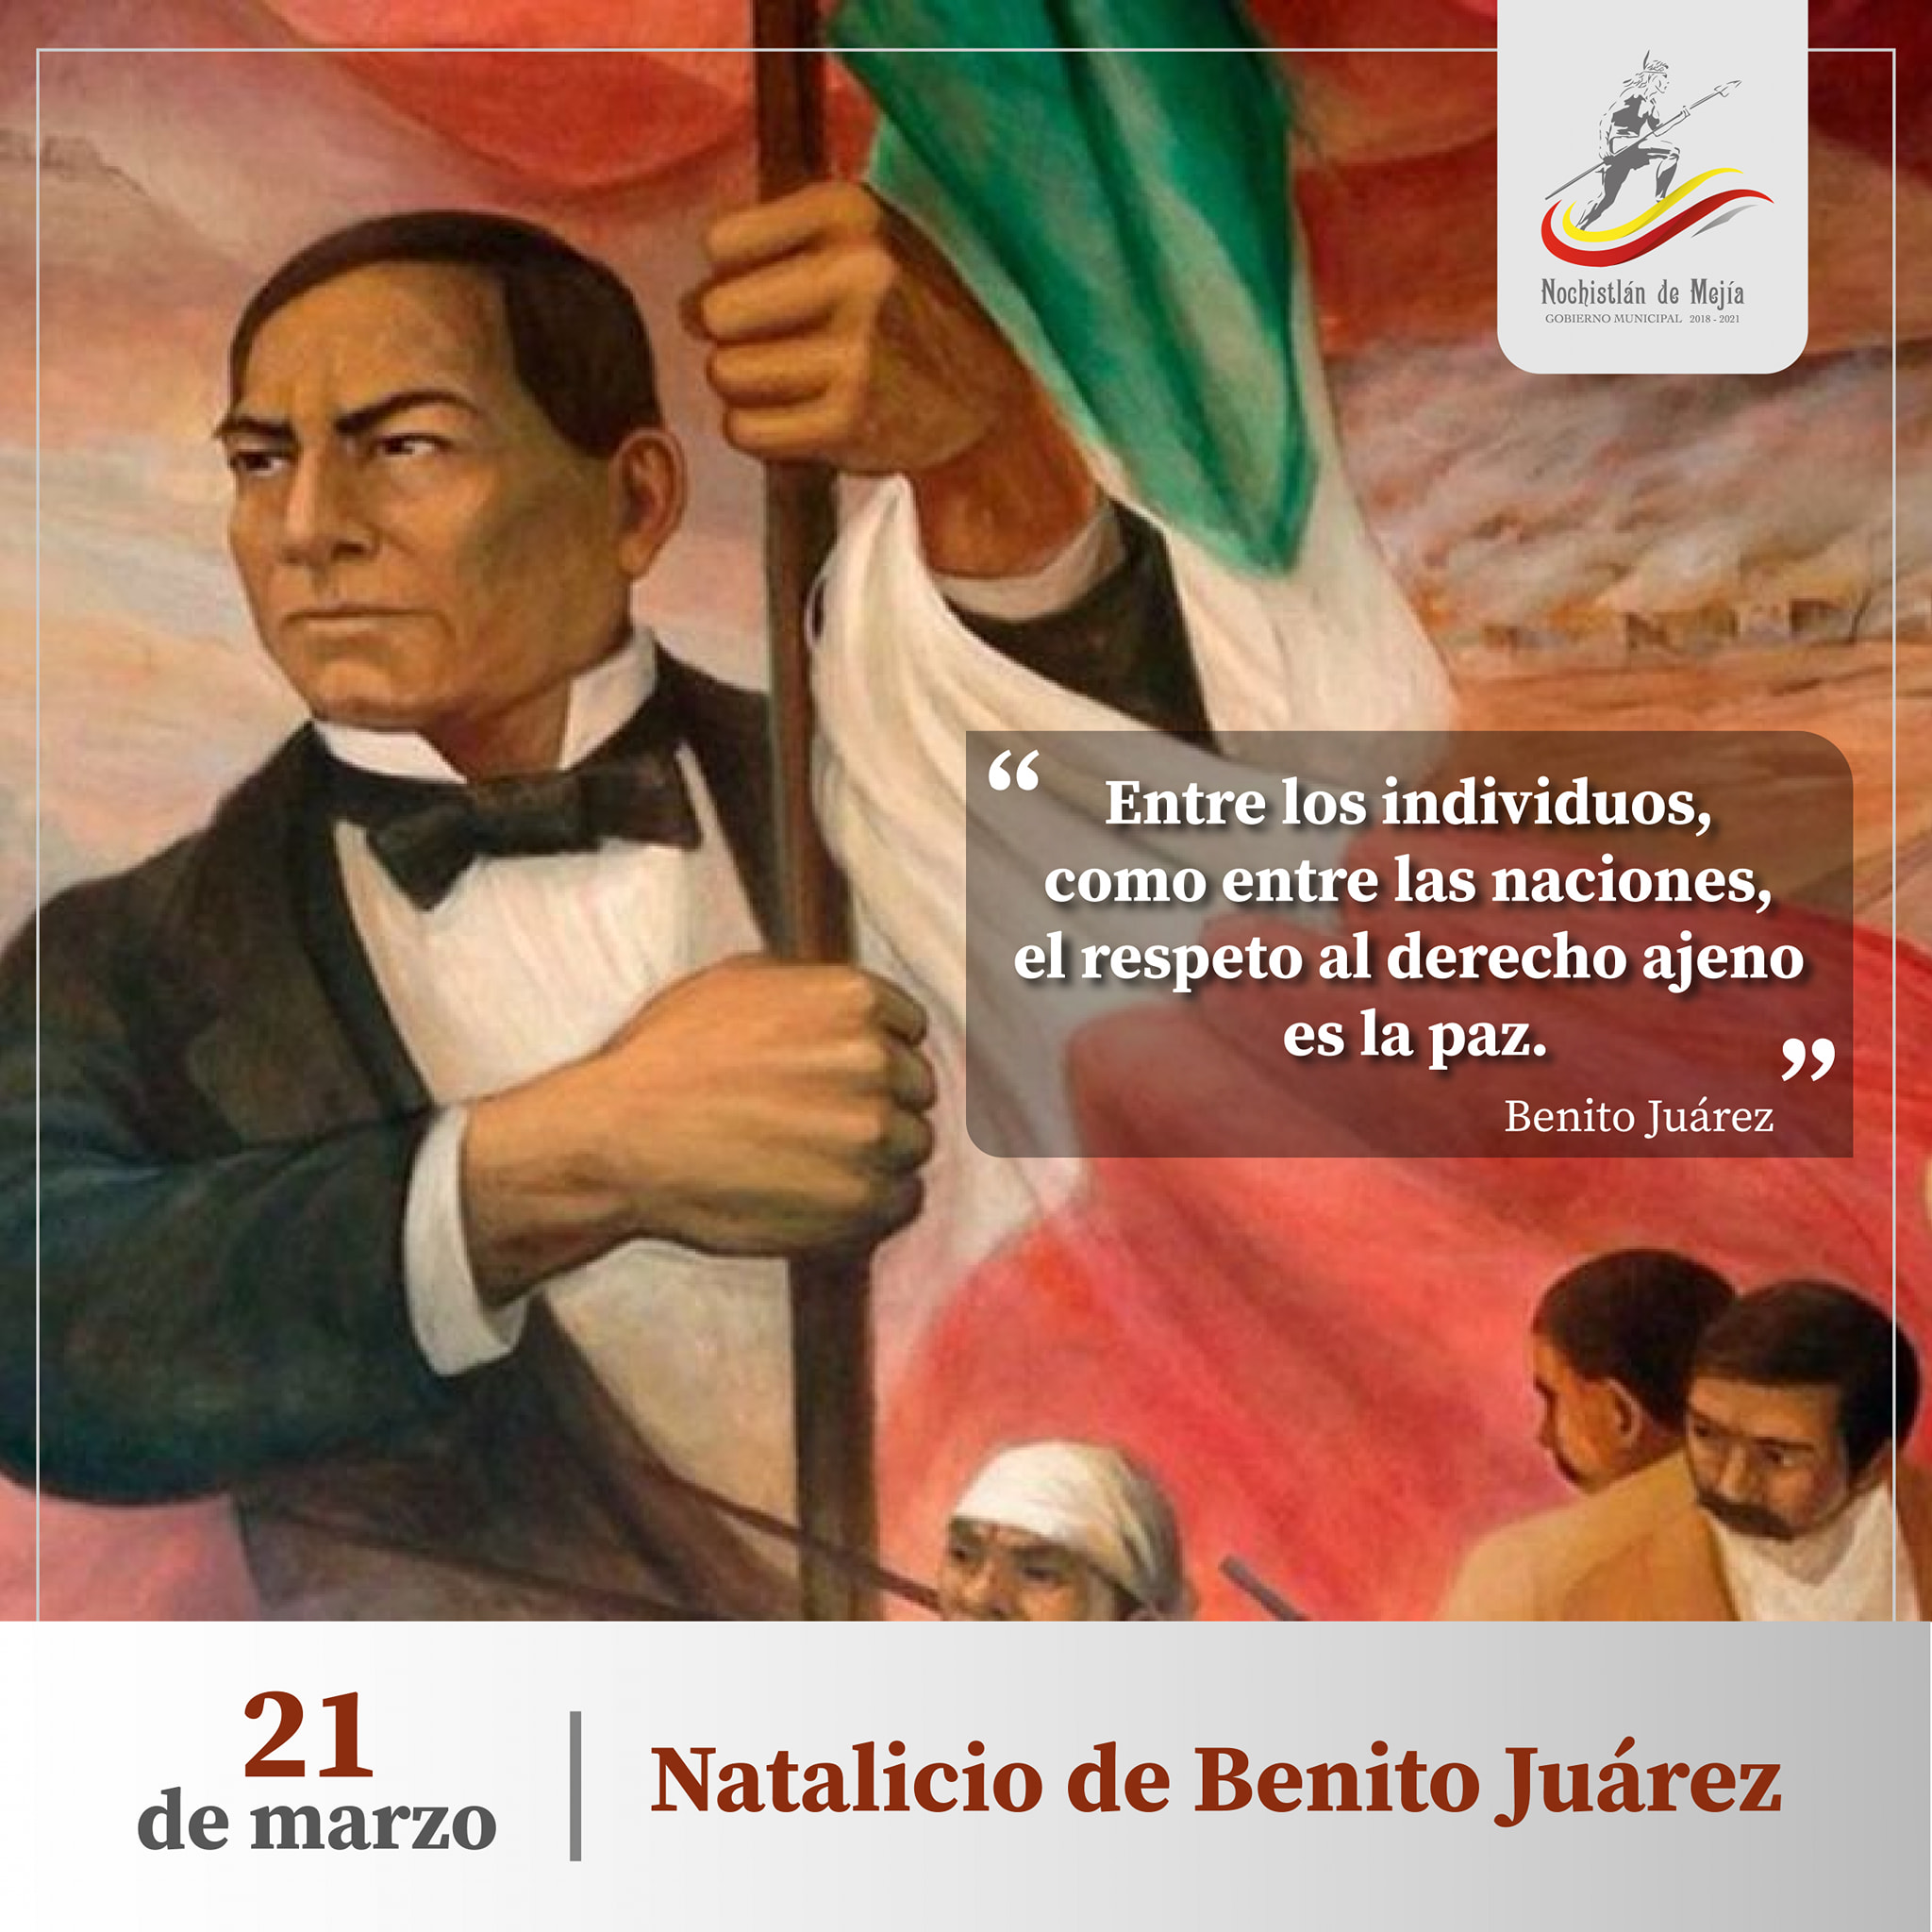 Conmemoramos el Natalicio de Benito Juárez